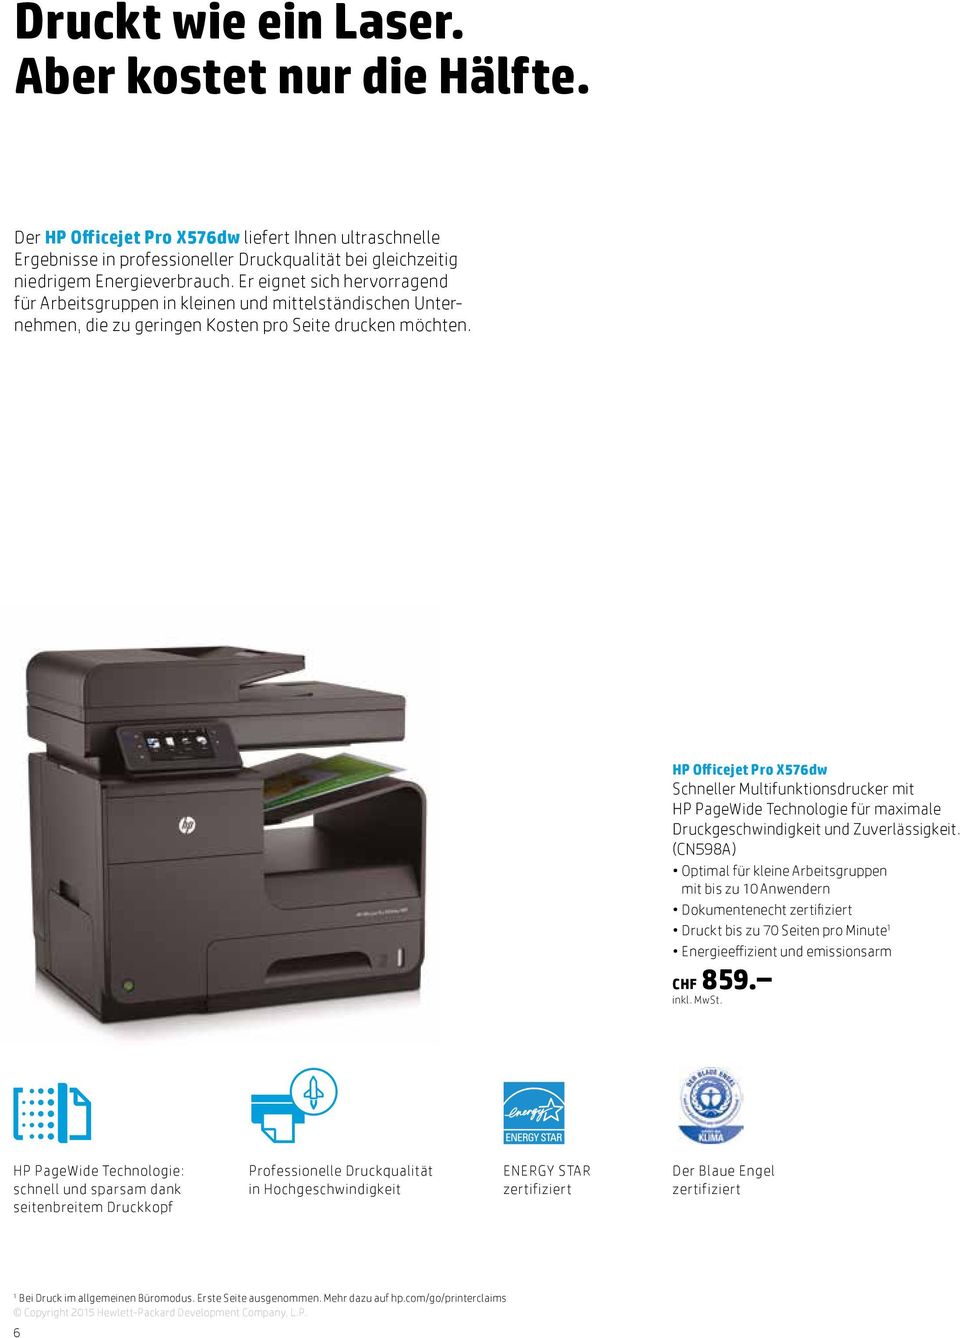 HP Officejet Pro X576dw Schneller Multifunktionsdrucker mit HP PageWide Technologie für maximale Druckgeschwindigkeit und Zuverlässigkeit.